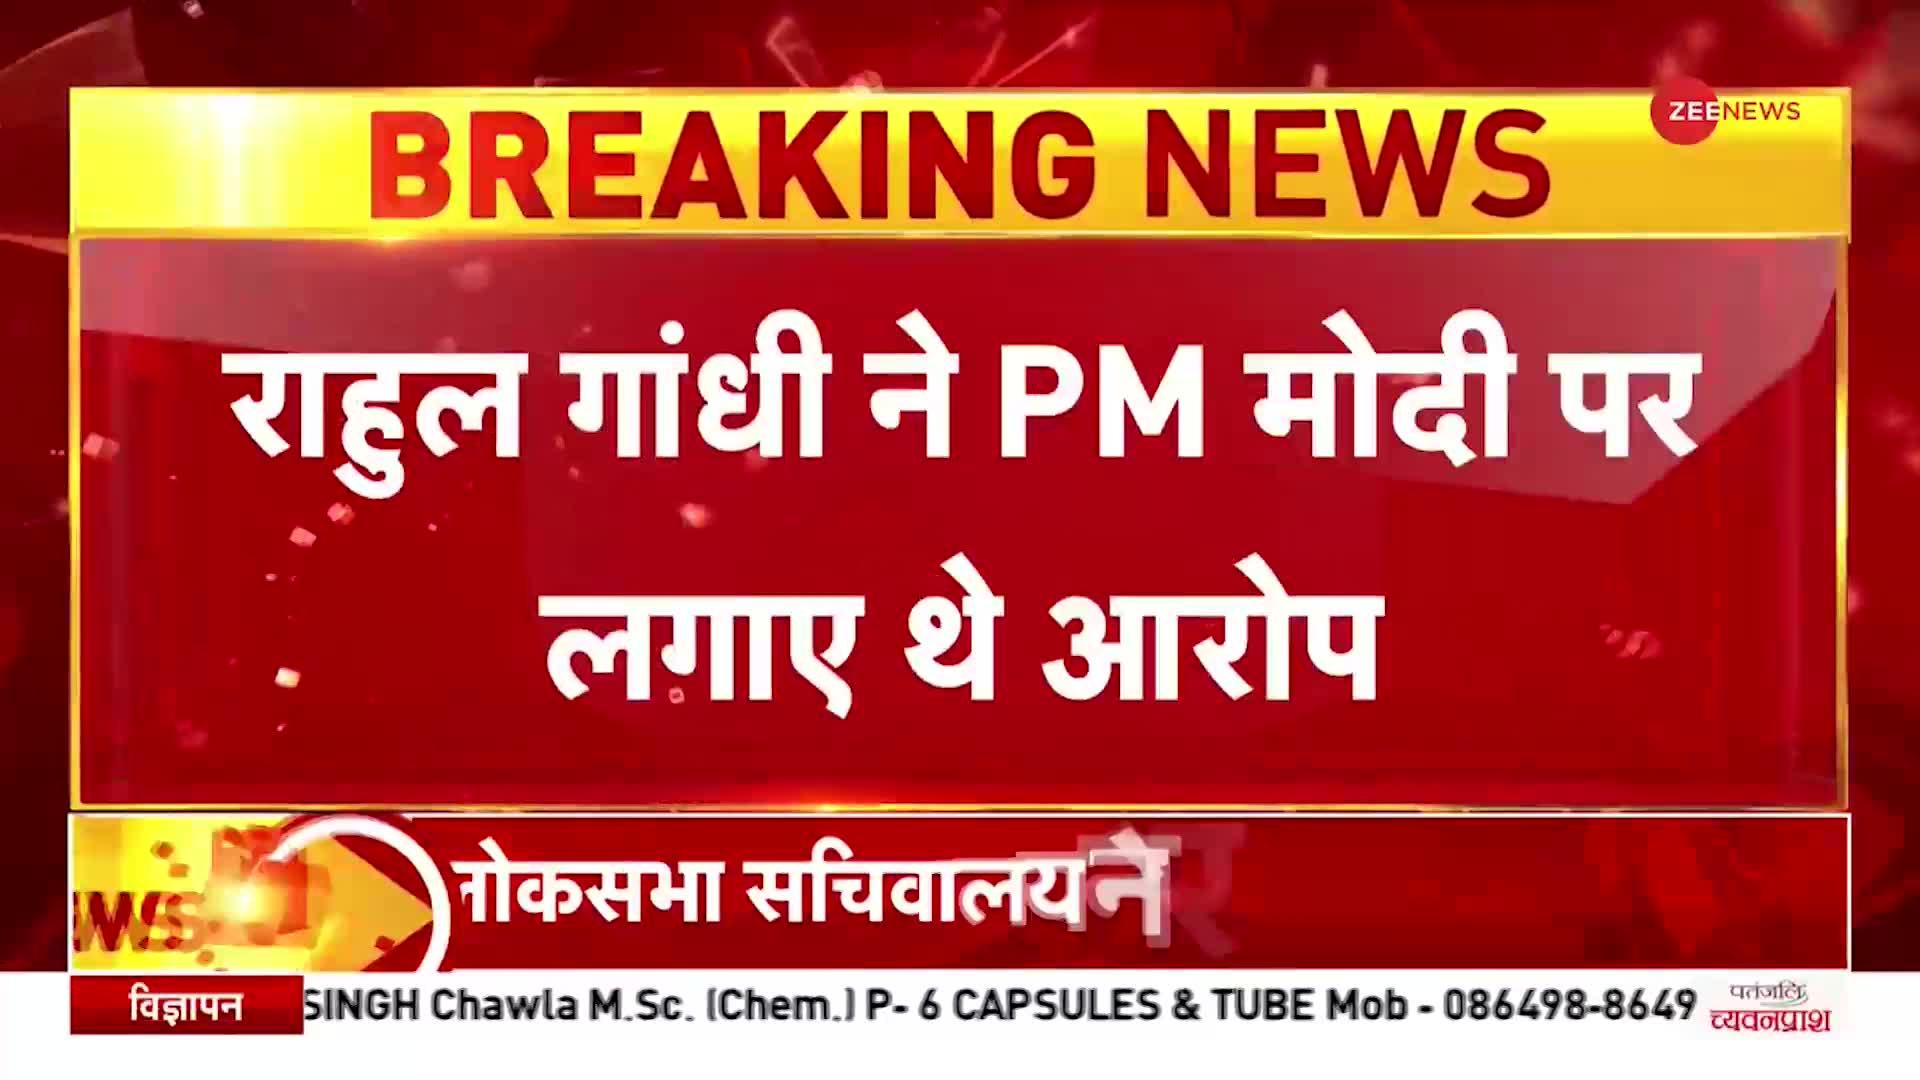 BREAKING: Rahul Gandhi के खिलाफ लोकसभा सचिवालय ने किया Notice जारी, PM Modi पर लगाए थे गंभीर आरोप